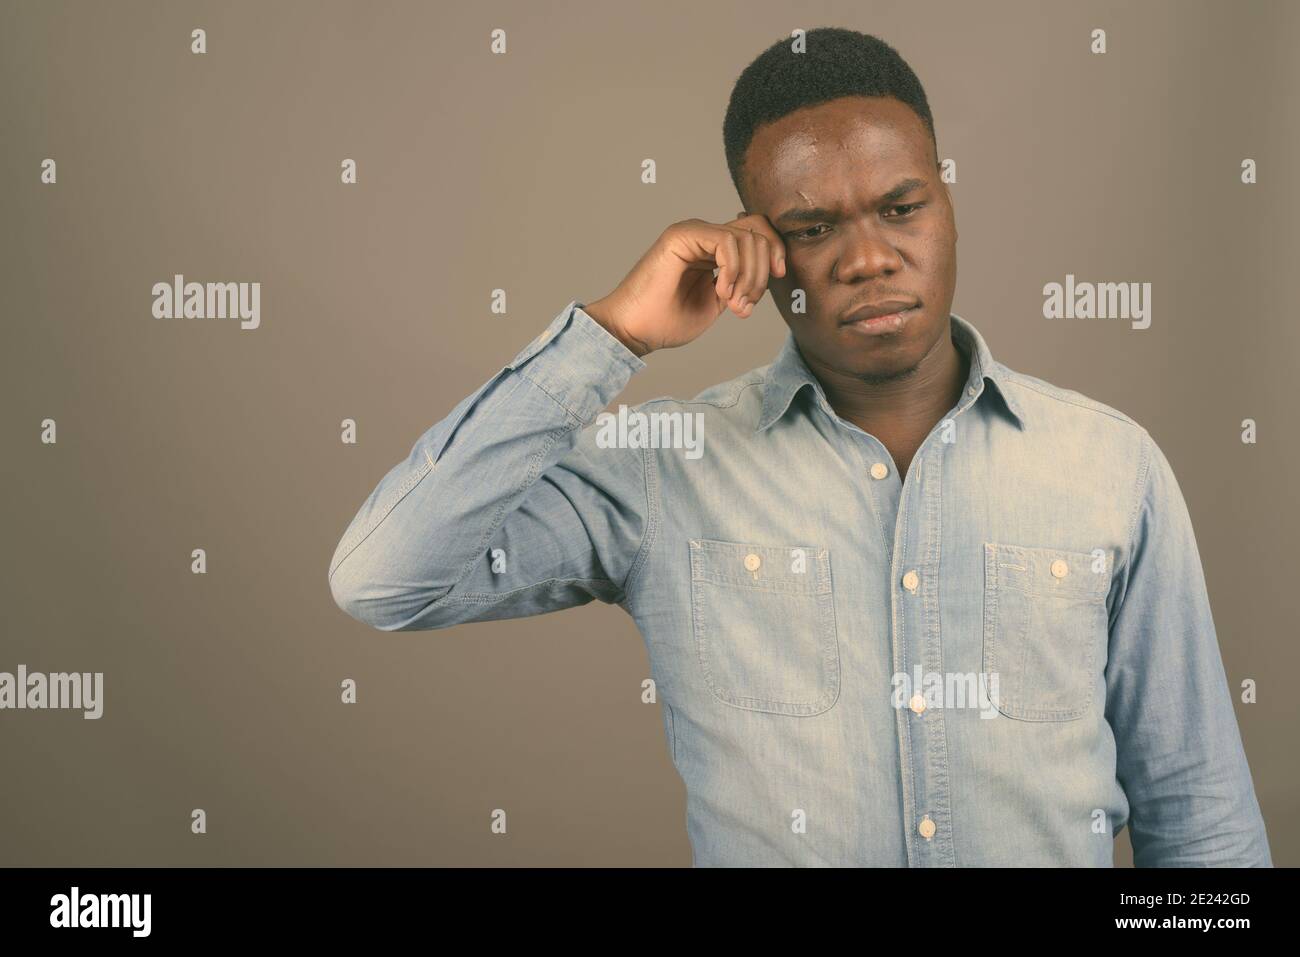 Young African man wearing denim shirt contre l'arrière-plan gris Banque D'Images